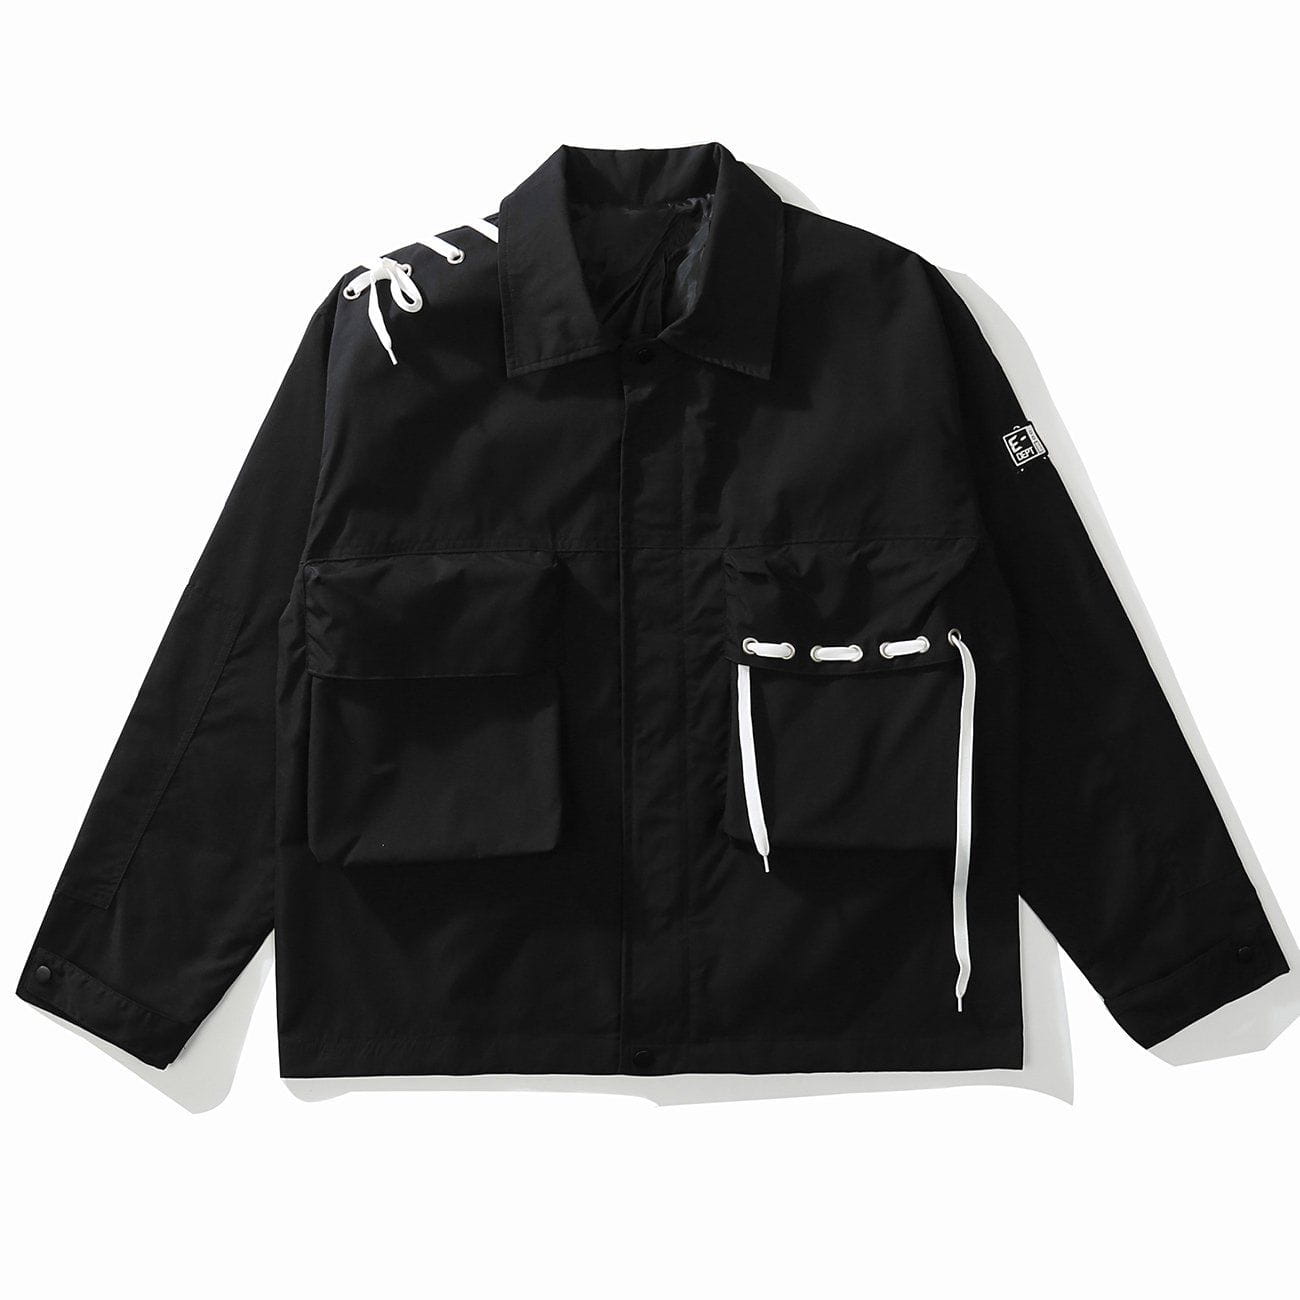 Majesda® - Plain Pockets Jacket outfit ideas, streetwear fashion - majesda.com